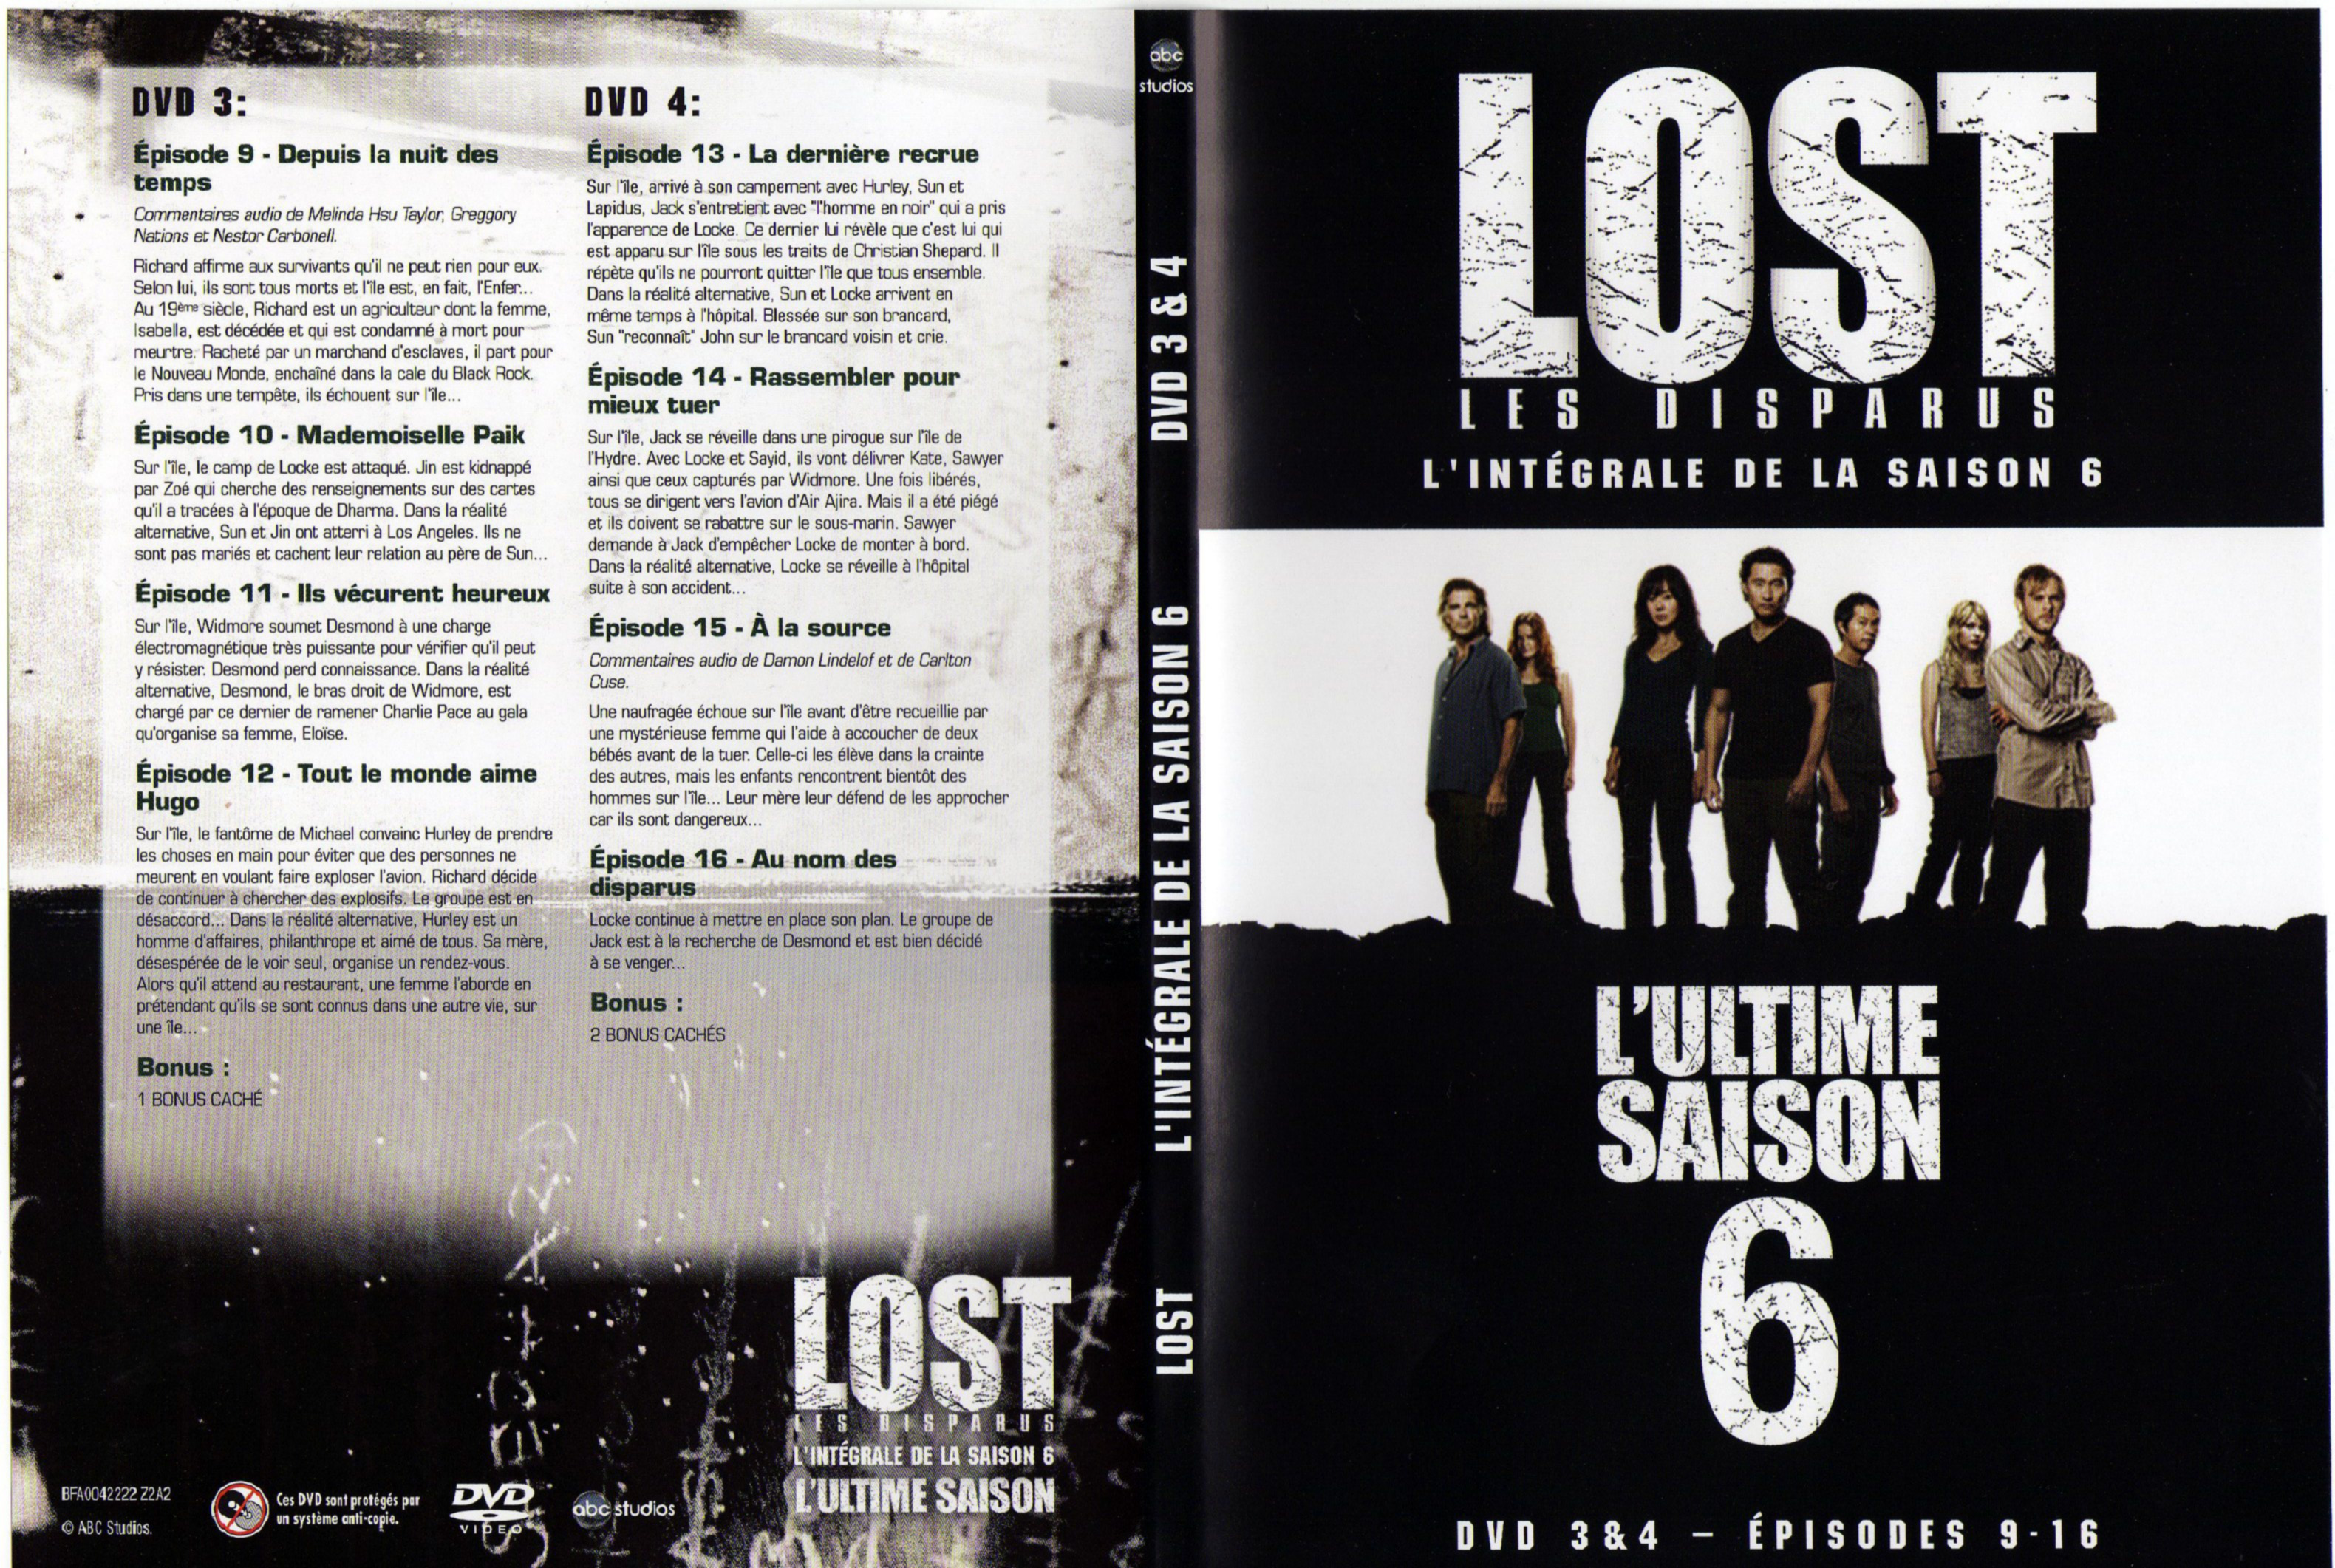 Jaquette DVD Lost Saison 6 DVD 2